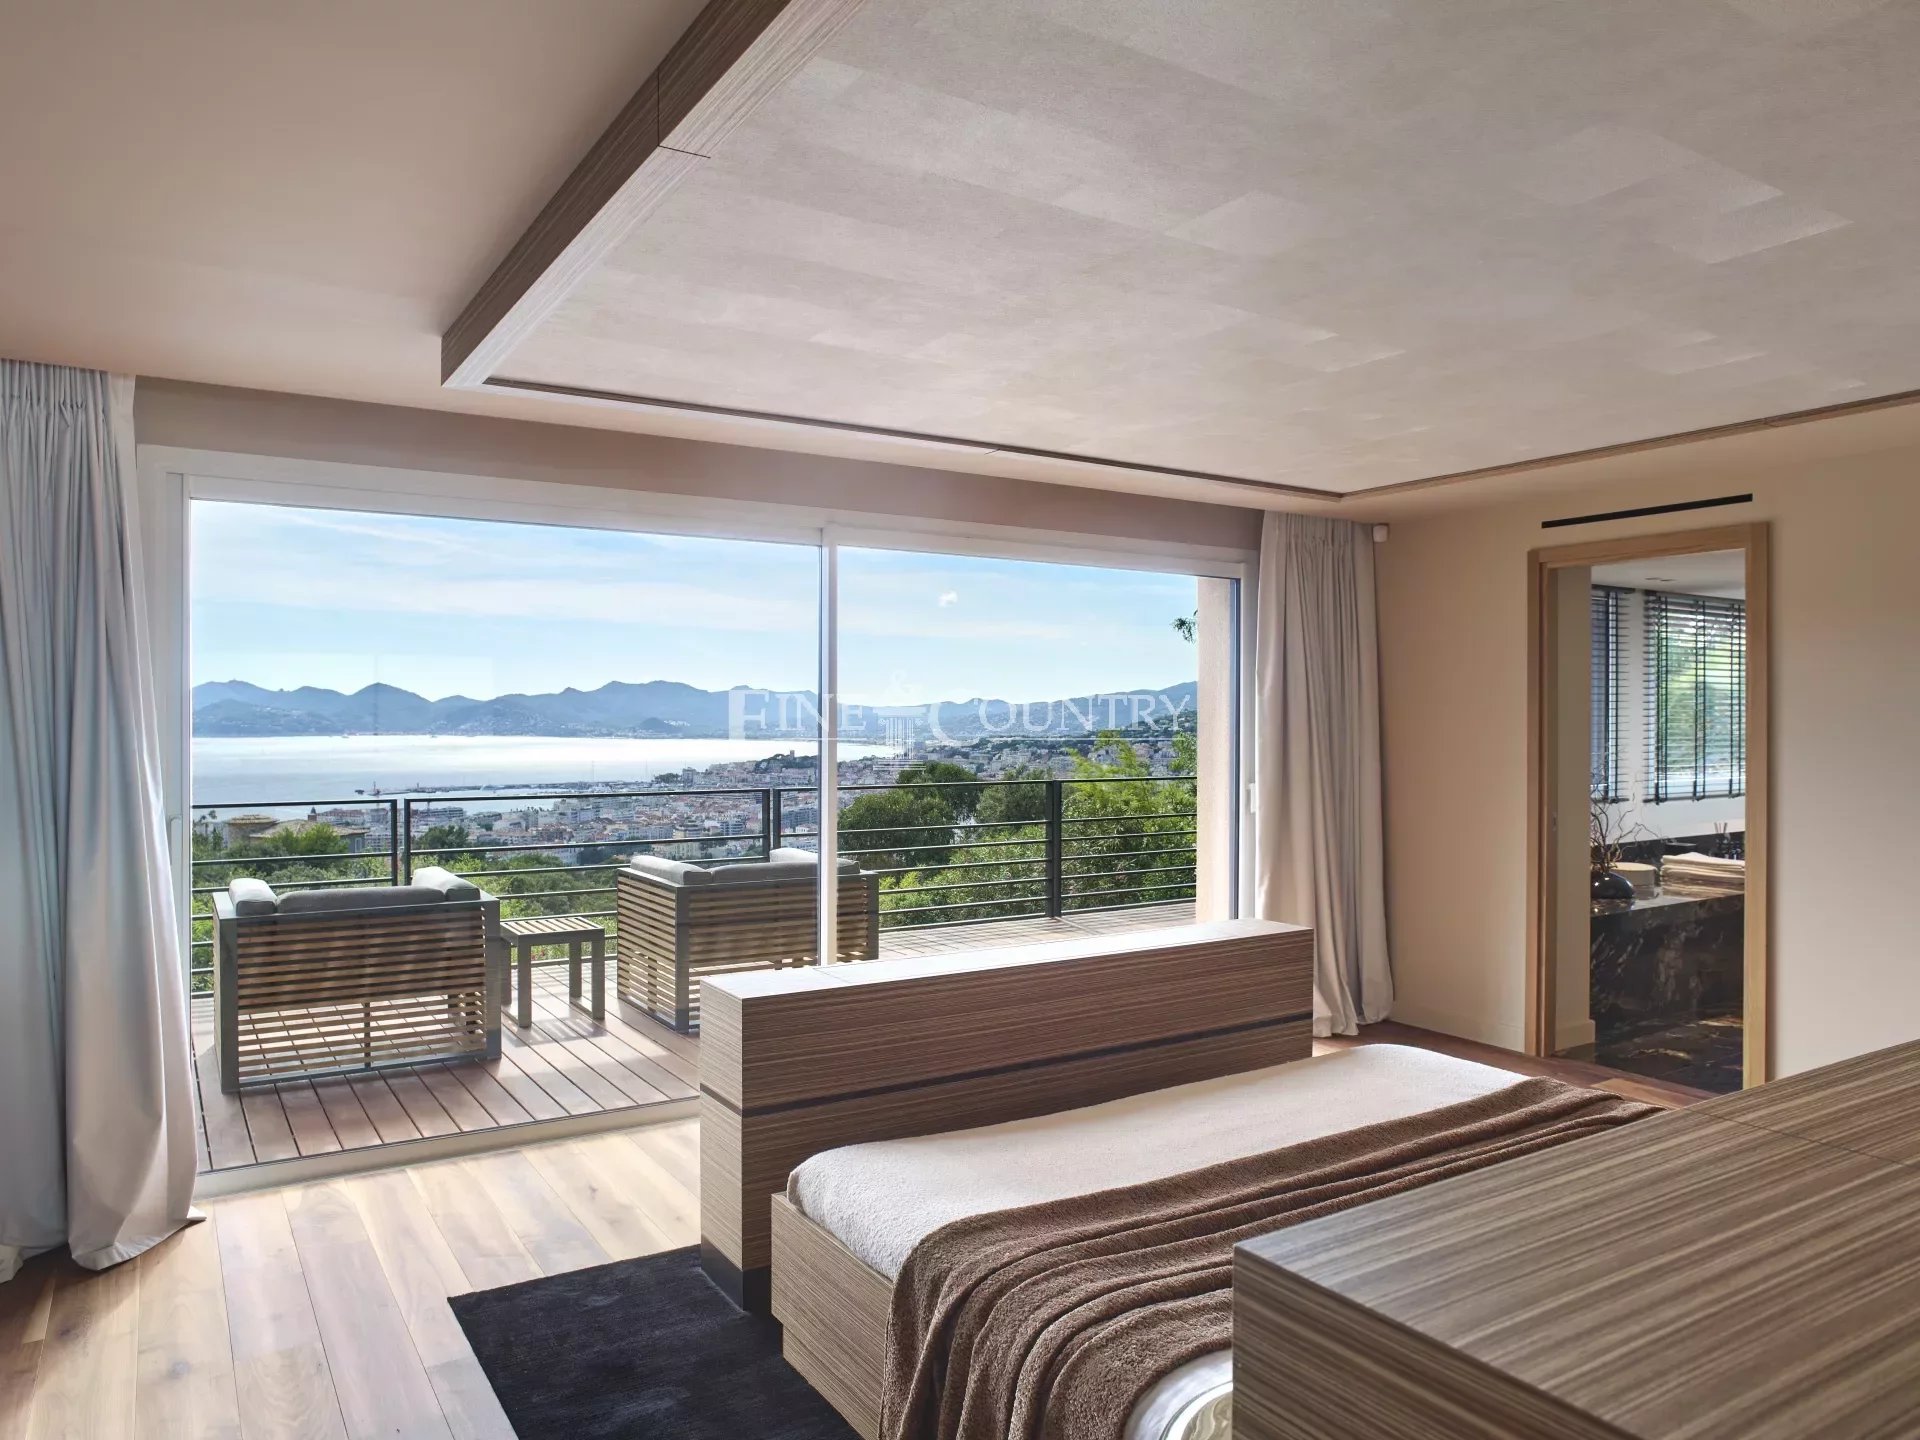 Contemporary Villa For Sale in Cannes, La Californie